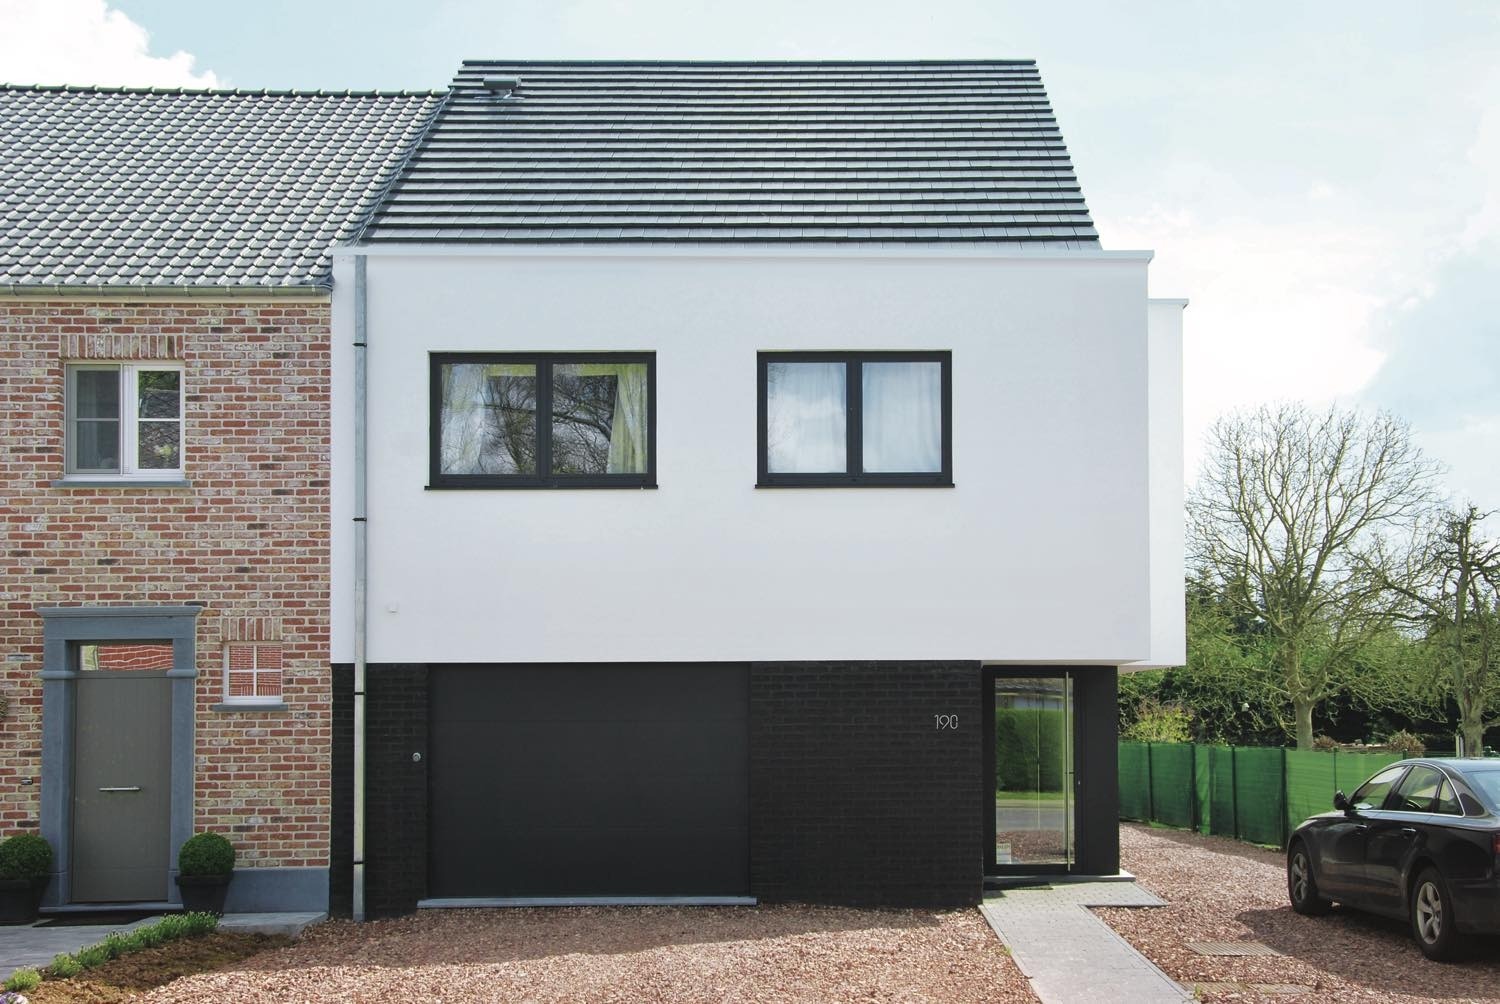 Halfopen bebouwing: moderne woning met witte crepi en zwarte baksteen